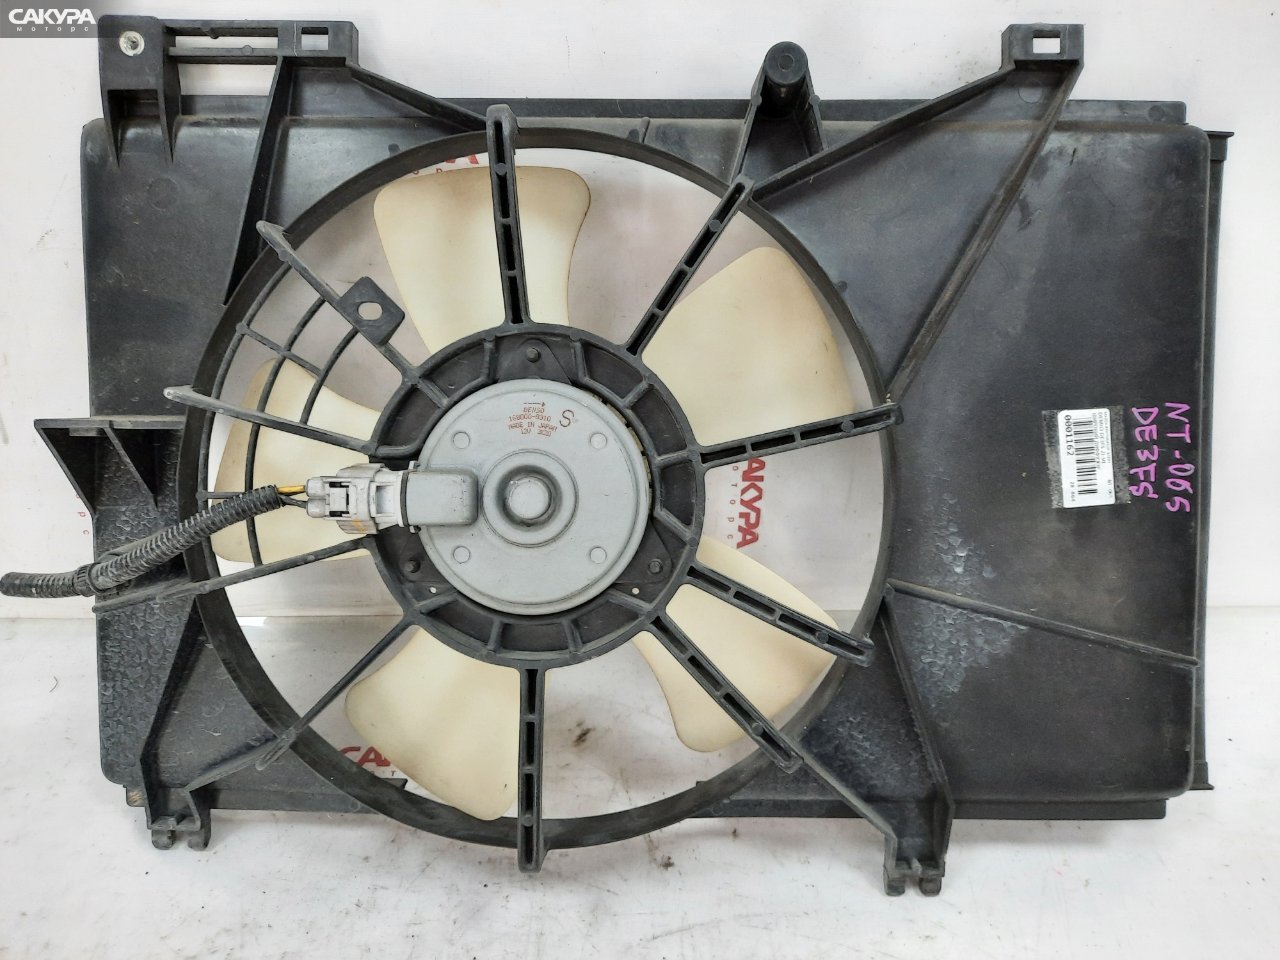 Вентилятор электрический Mazda Demio DE3FS ZJ-VE: купить в Сакура Красноярск.